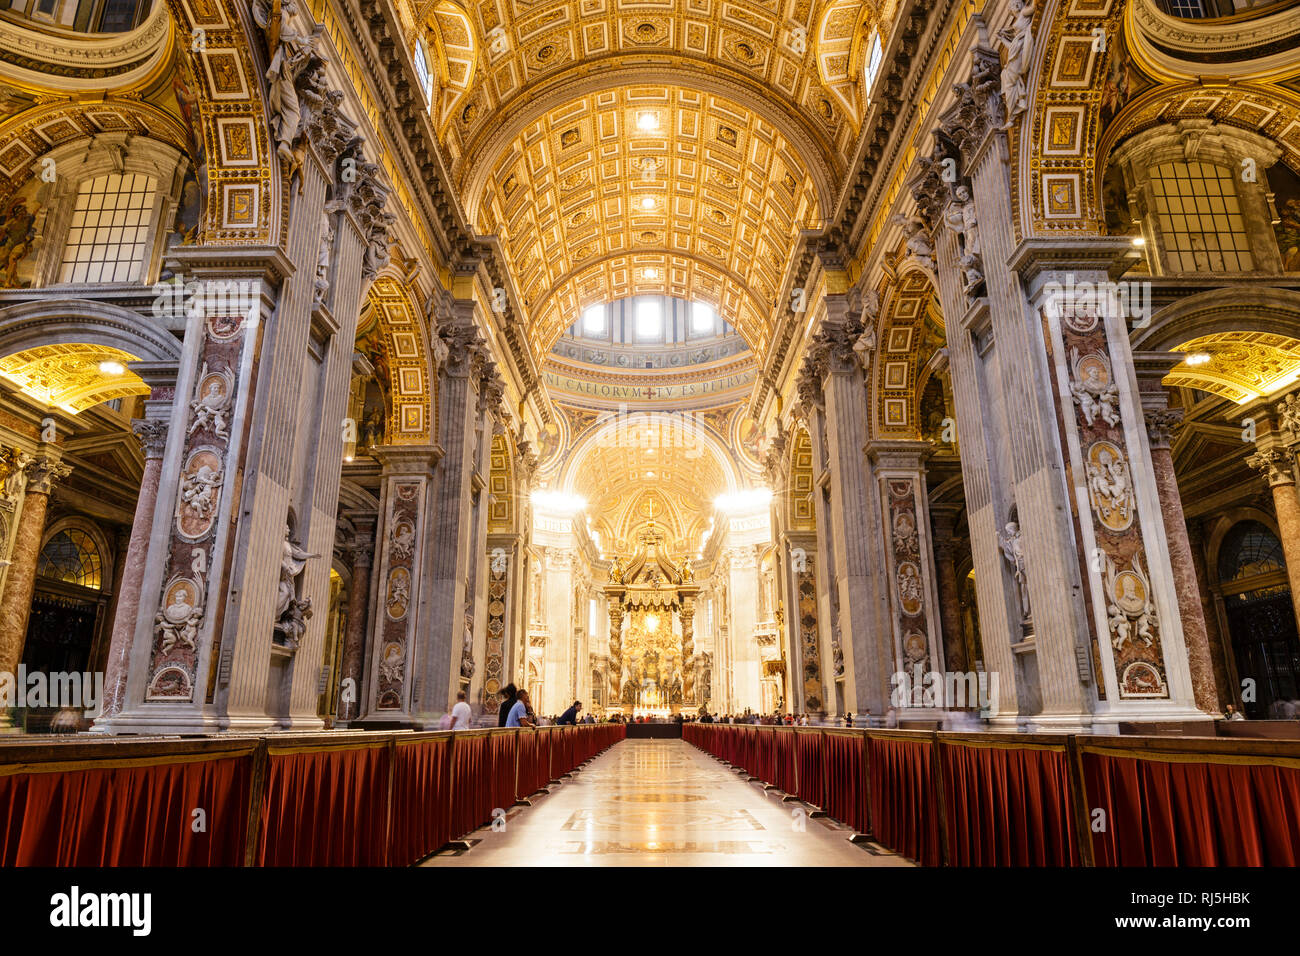 Europa, Italien, Lazio, Rom Vatikan, Im Hauptschiff des Petersdoms, mit Blick in die Seitenschiffe und die Vierung Foto Stock